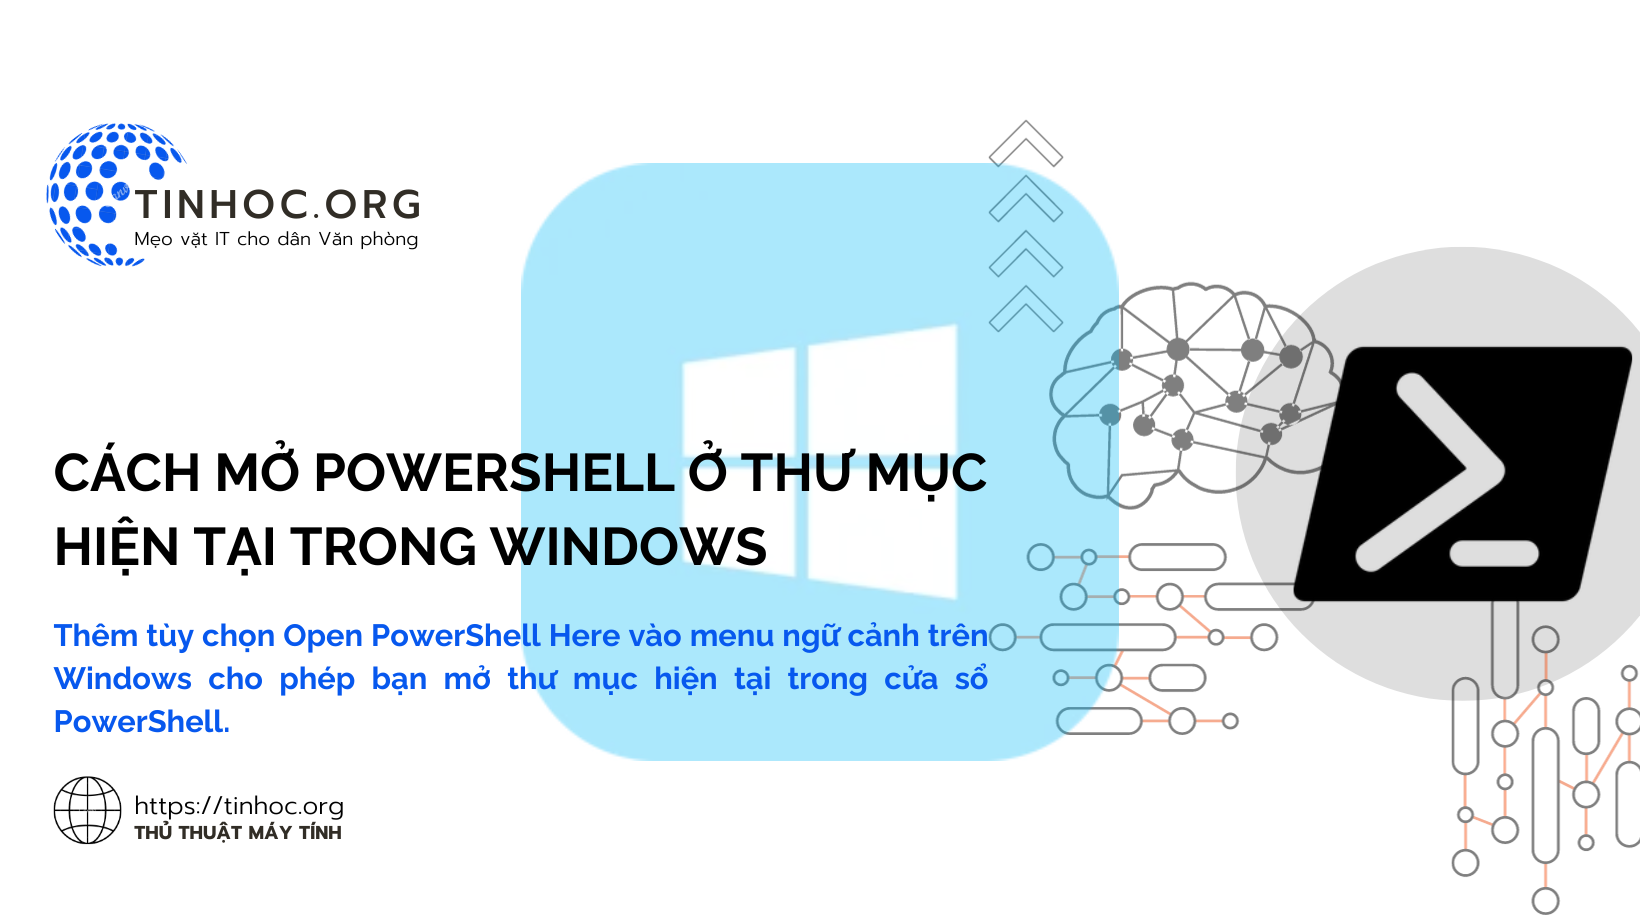 Thêm tùy chọn Open PowerShell Here vào menu ngữ cảnh trên Windows cho phép bạn mở thư mục hiện tại trong cửa sổ PowerShell.